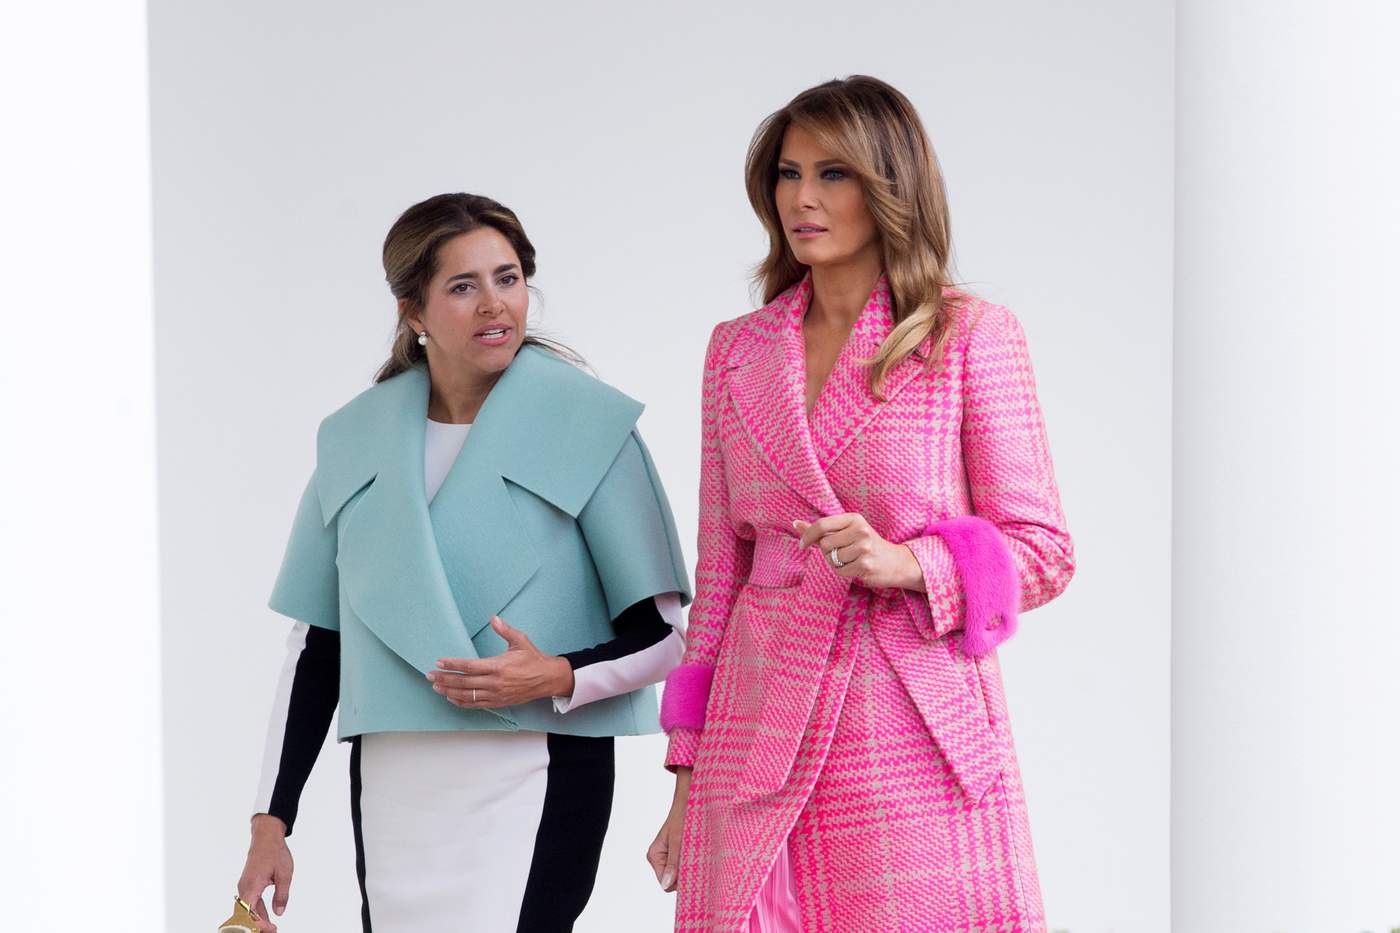 Las primeras damas almorzaron juntas en la Sala Roja de la Casa Blanca mientras sus respectivos esposos -el presidente estadounidense, Donald Trump, y el colombiano, Iván Duque- mantenían un almuerzo de trabajo en el Ala Oeste. (EFE)